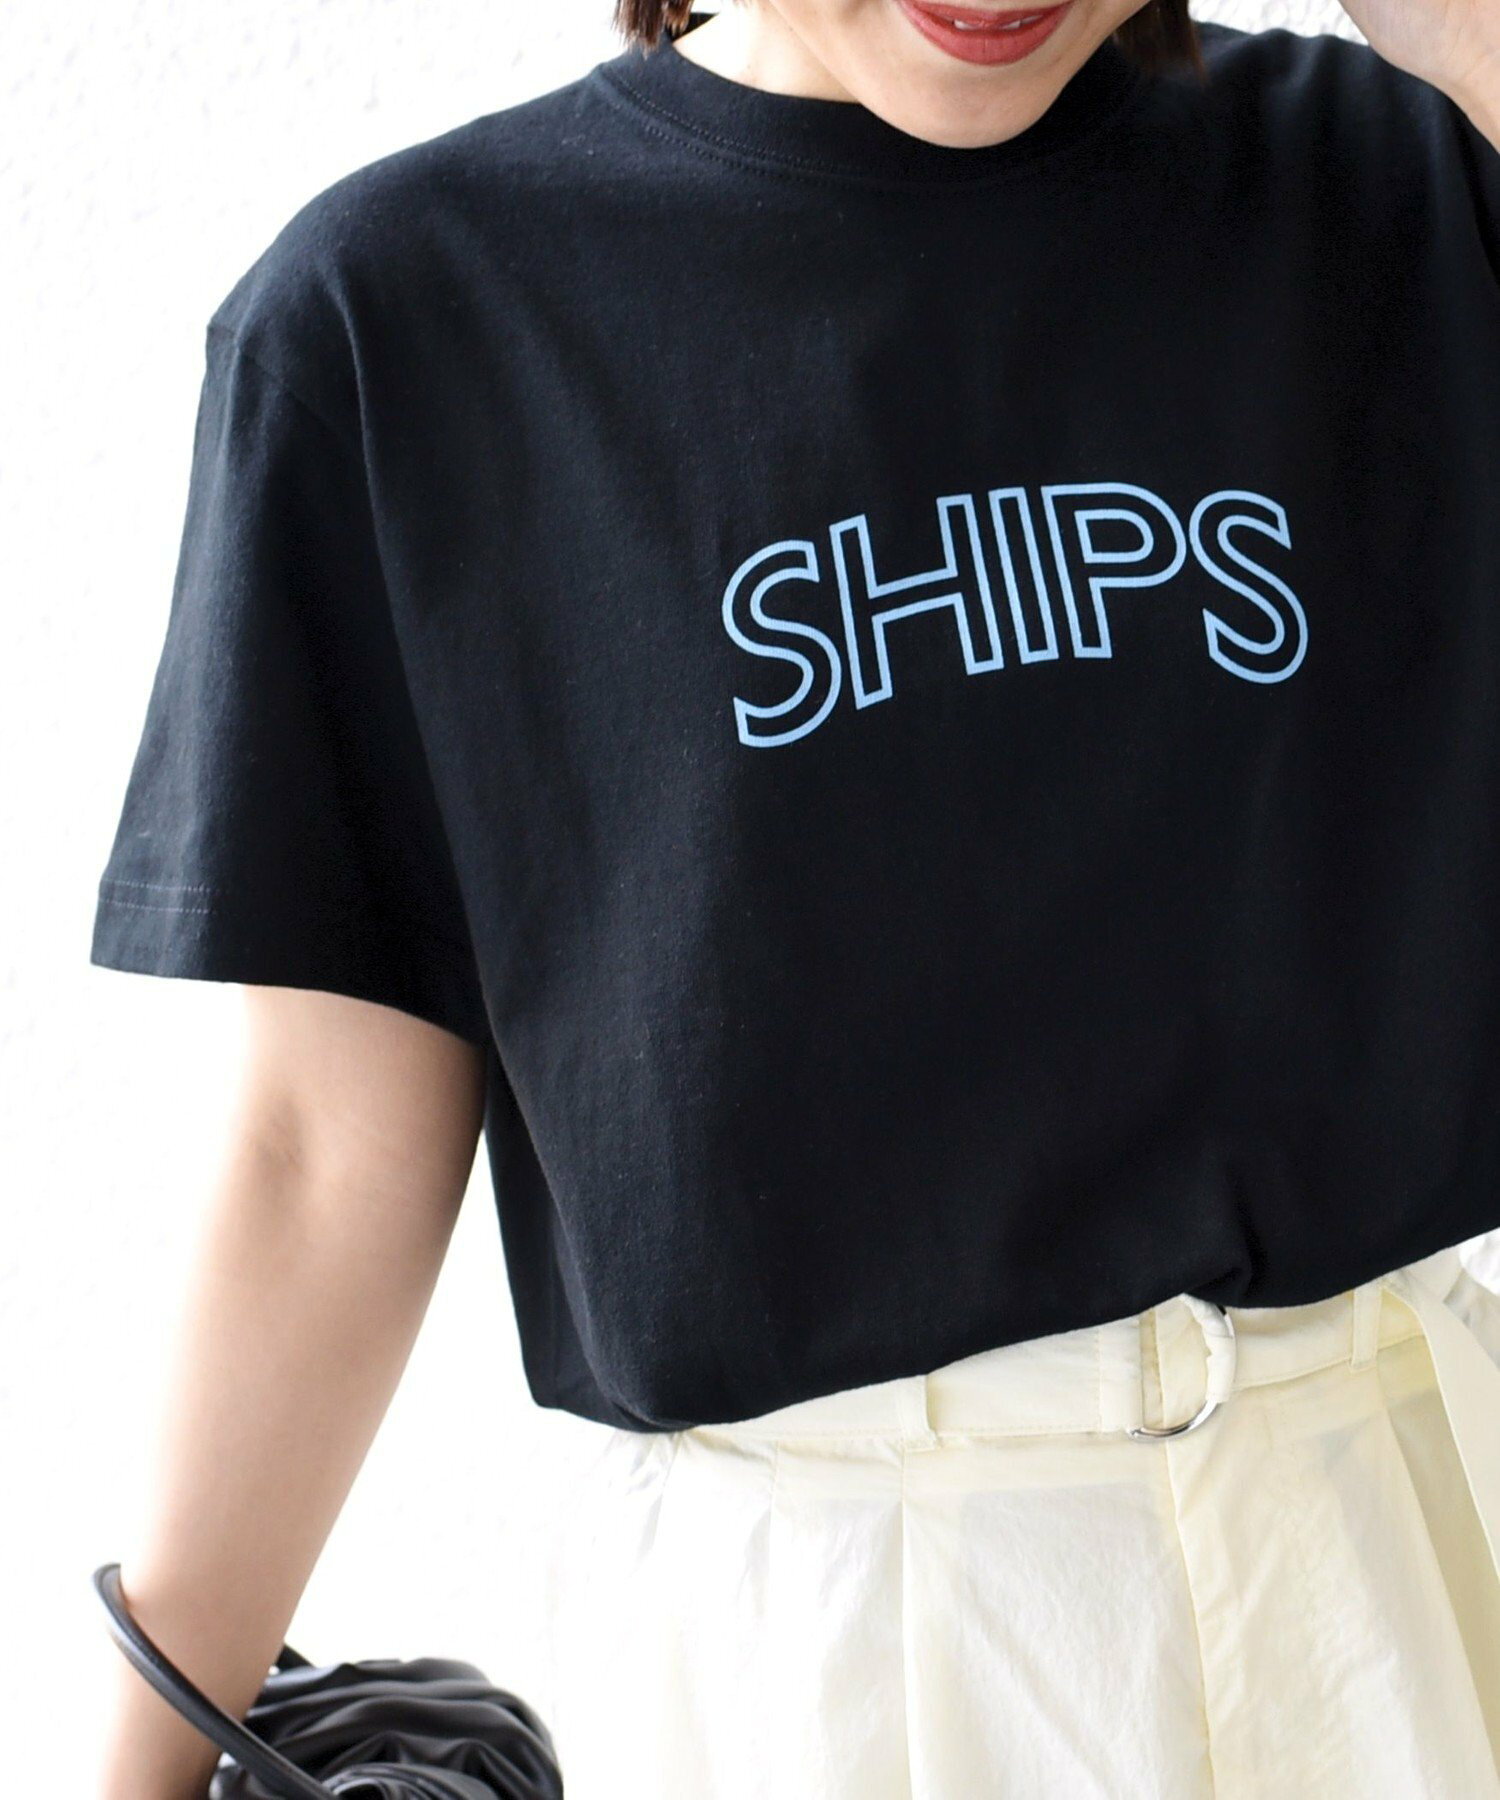 * SHIPS ラウンド プリント ロゴ TEE ◇